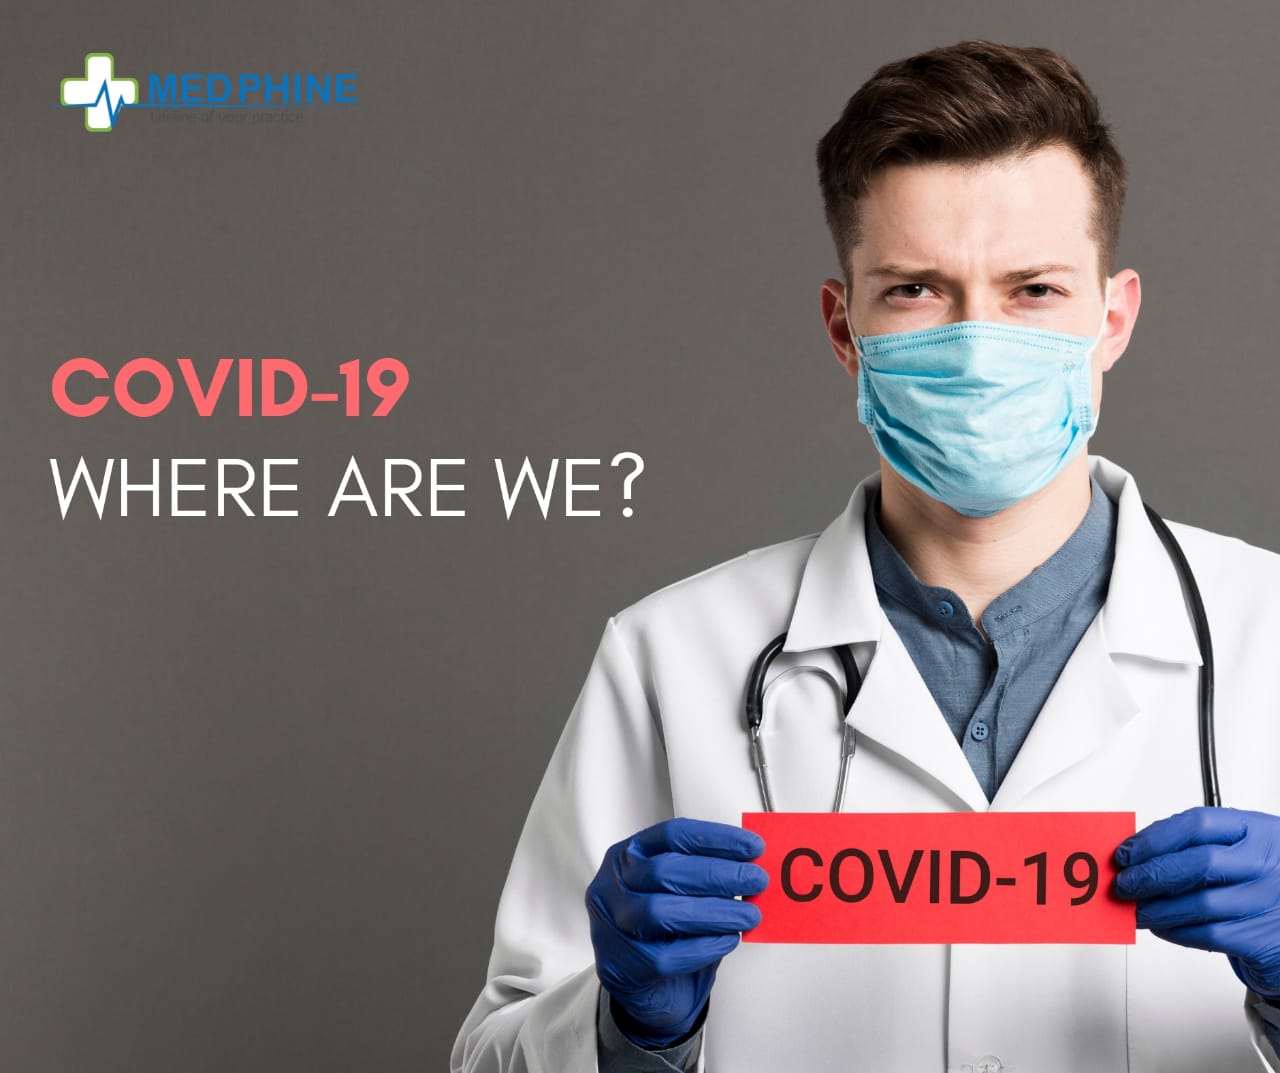 COVID-19: WHERE ARE WE?